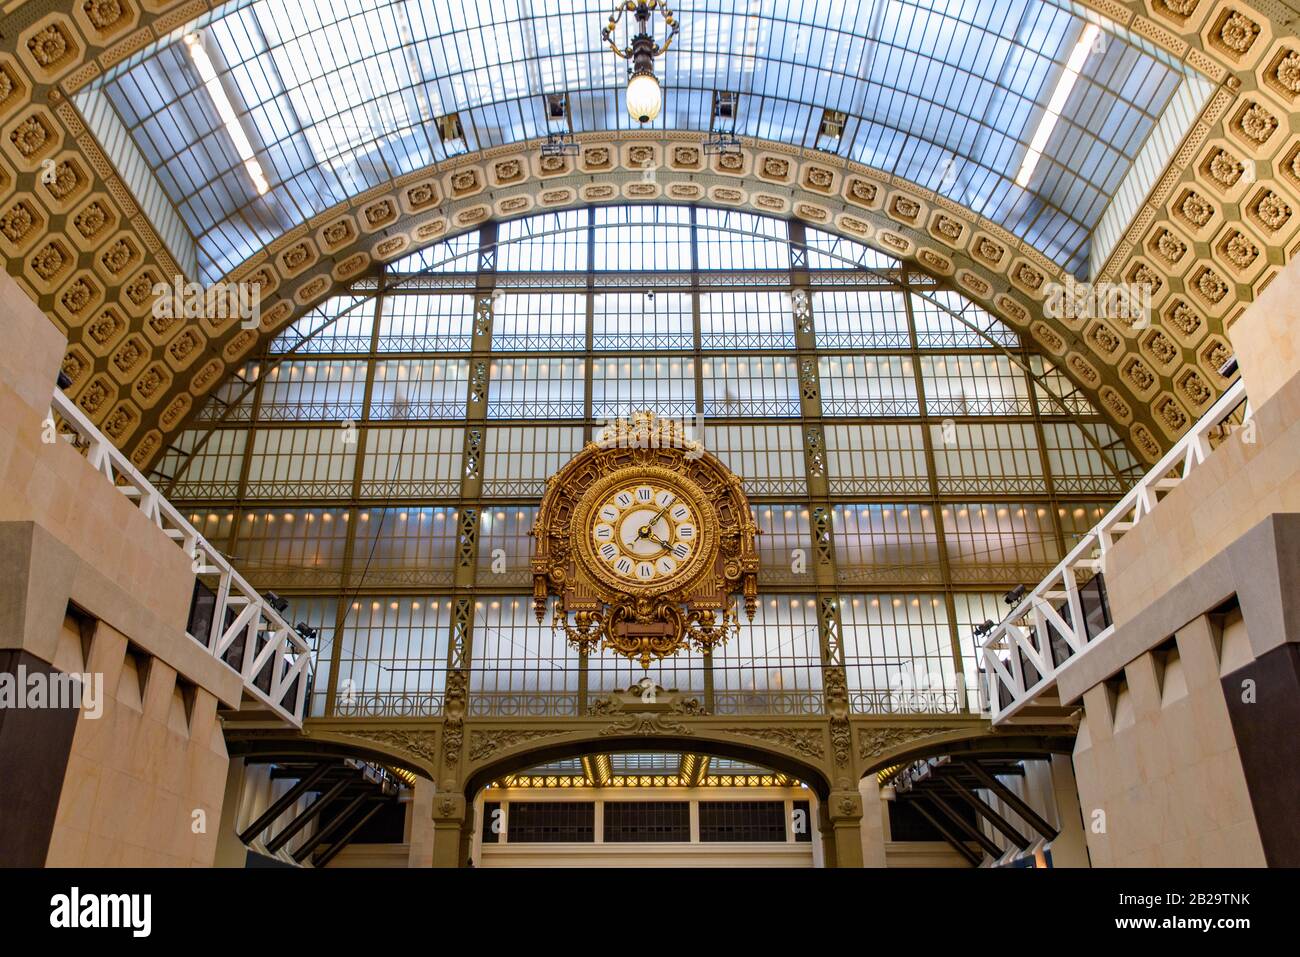 L'horloge et le dôme du Musée d'Orsay (Musée d'Orsay), Paris, France Banque D'Images